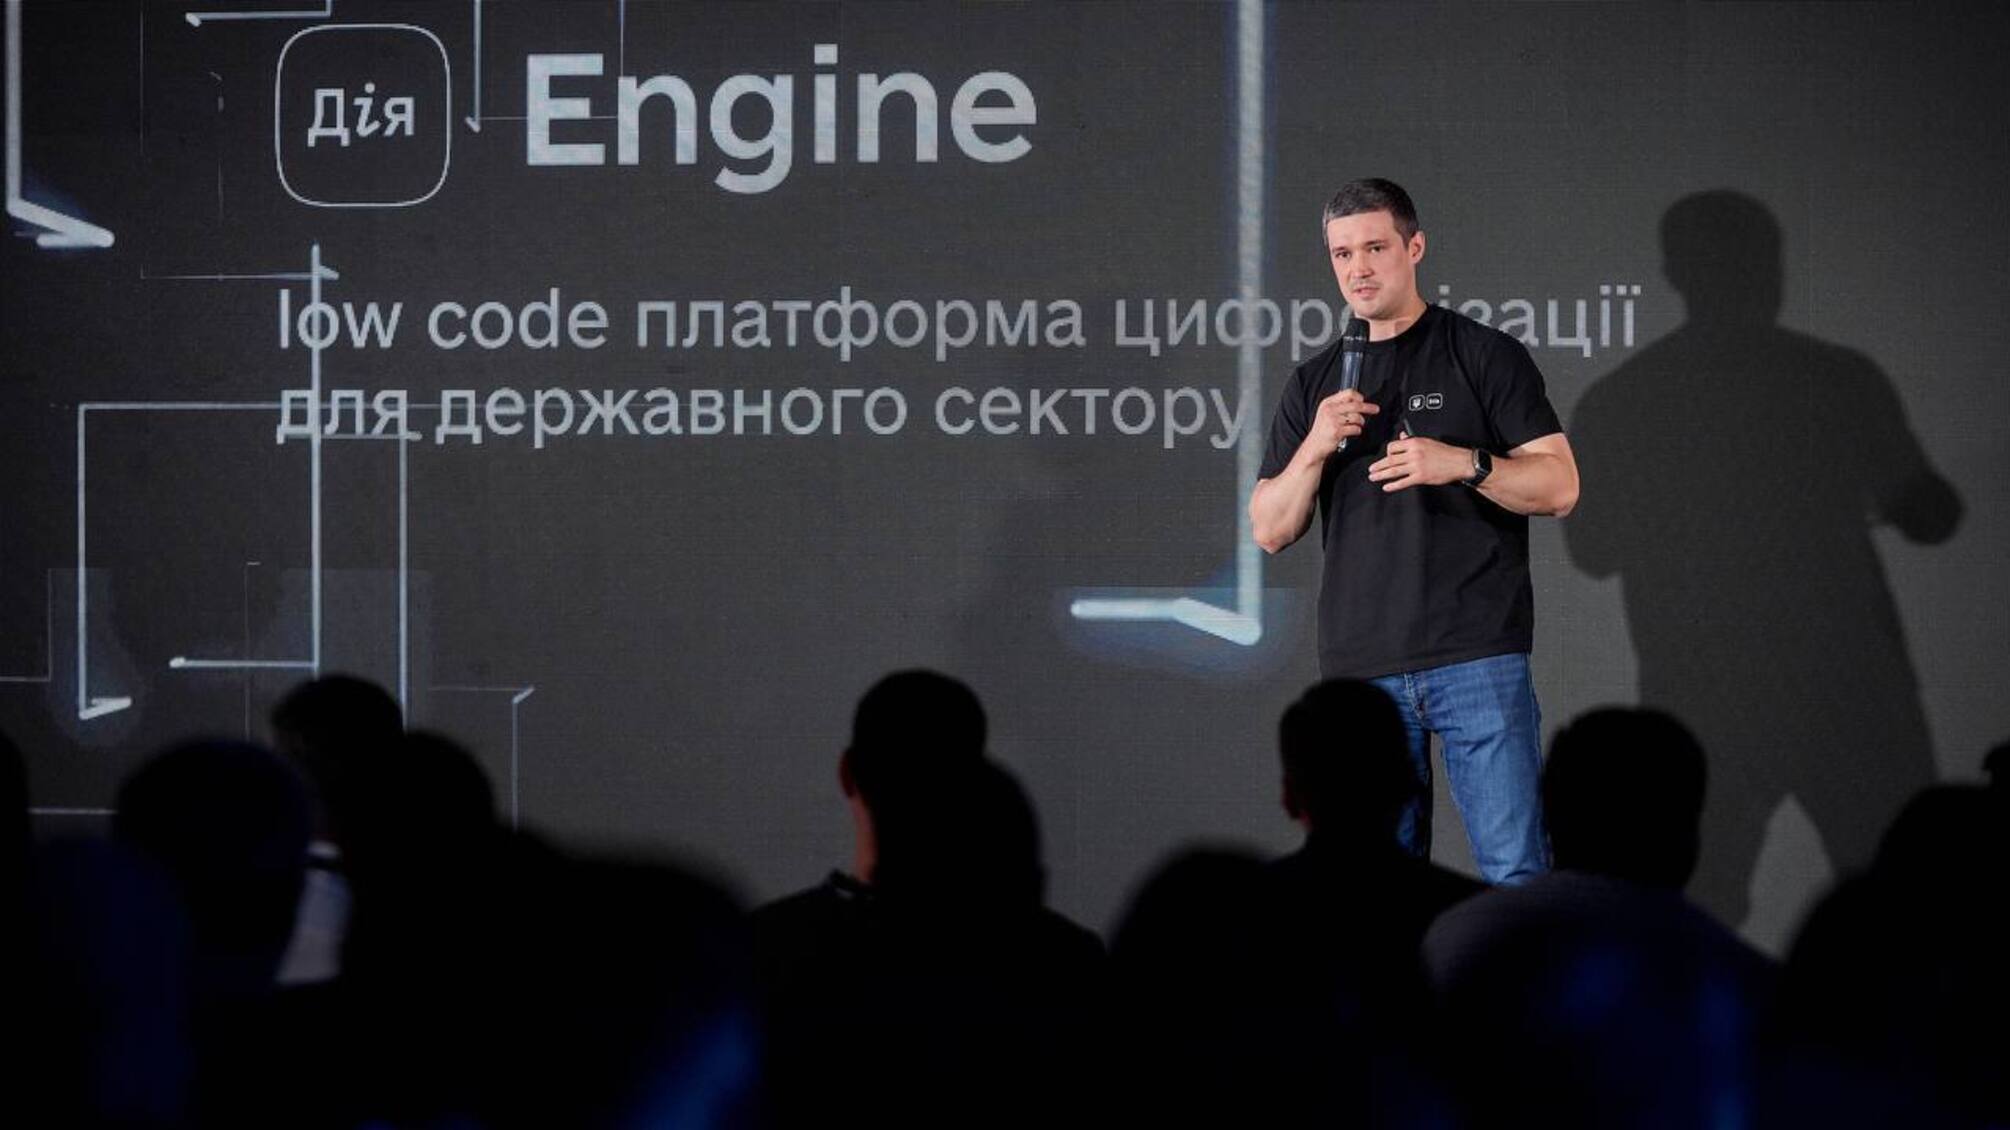 Развитие цифрового государства: Михаил Федоров рассказал о новой платформе 'Дія.Engine'